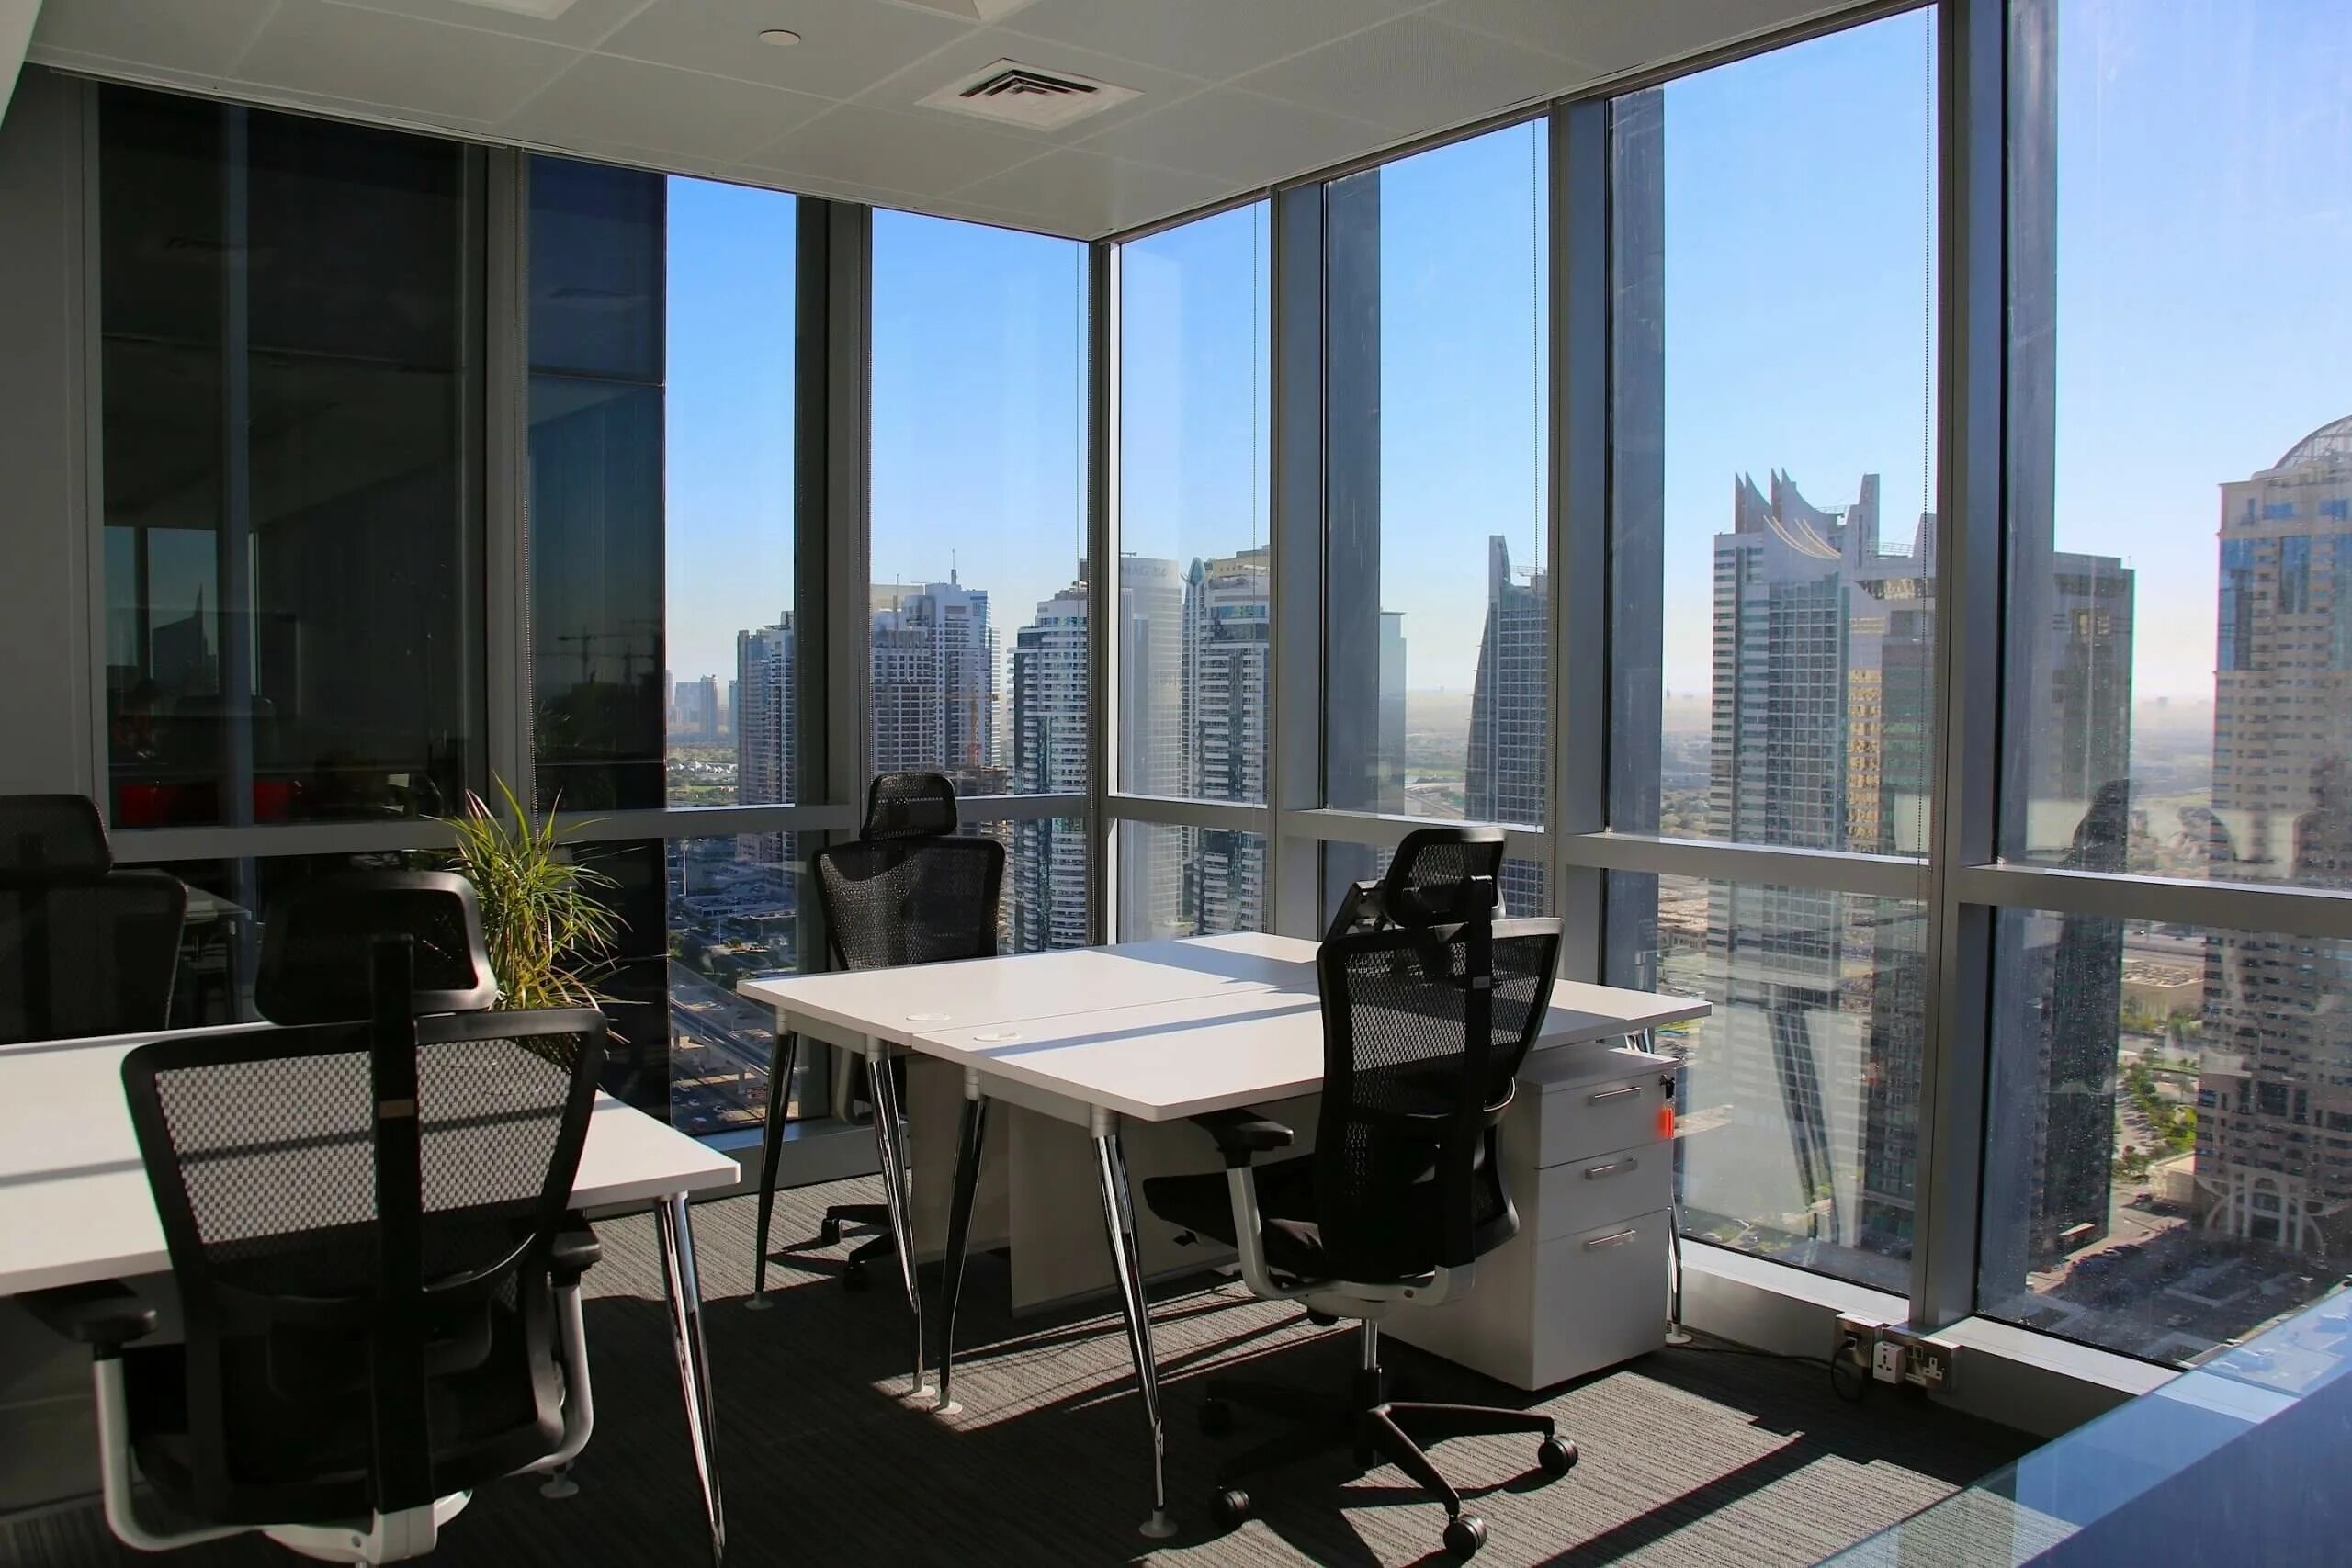 Marketing uae. Красивый вид из офиса. Офис в ОАЭ. Офисная недвижимость. Вид из офиса в Дубае.